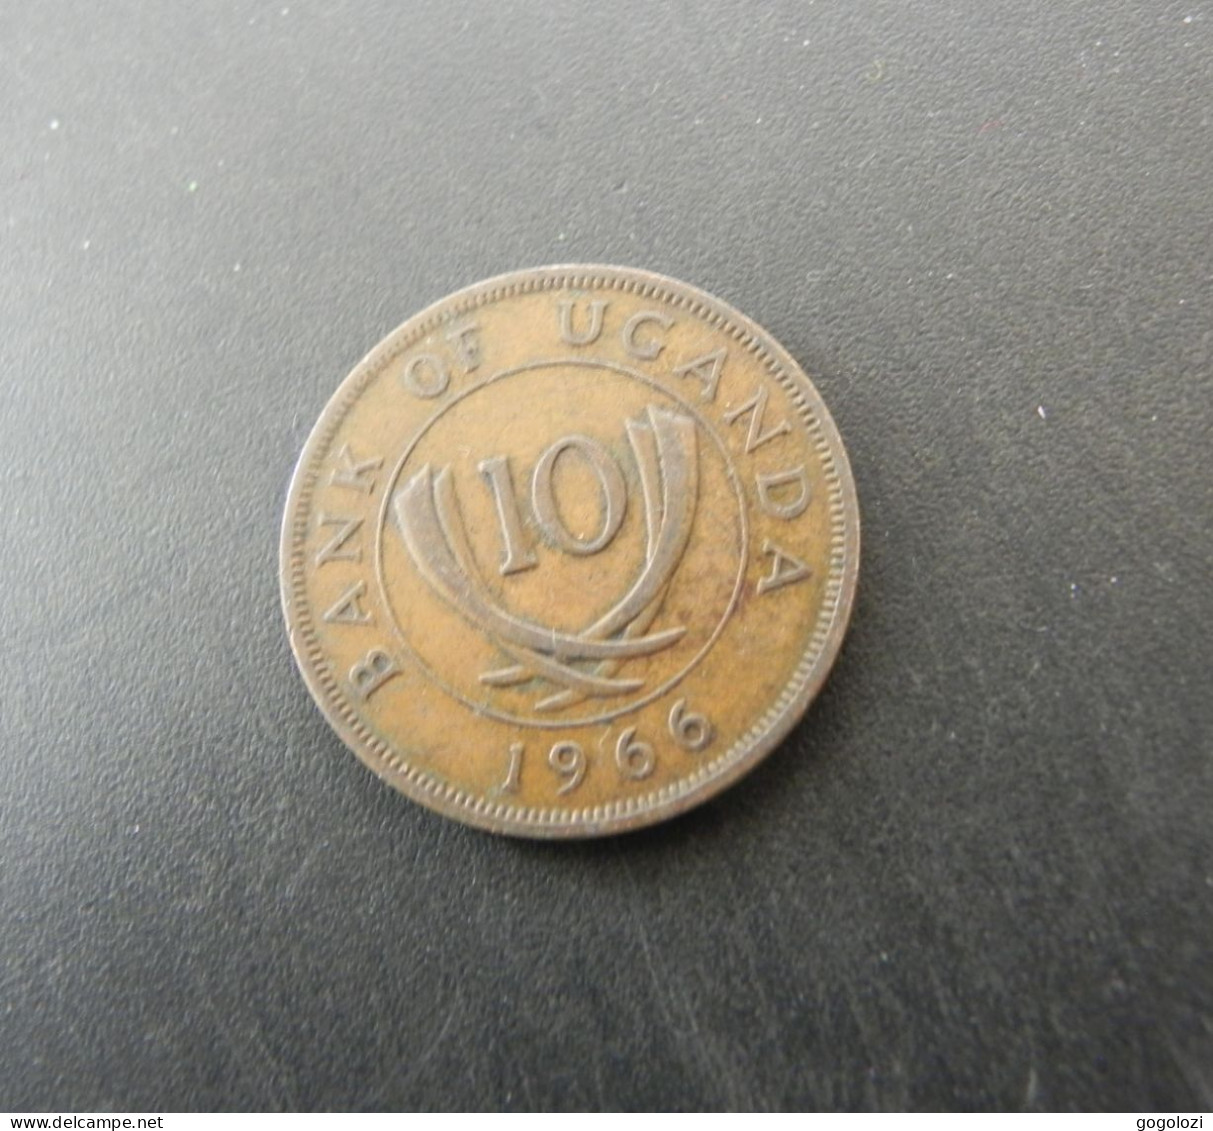 Uganda 10 Cents 1966 - Oeganda